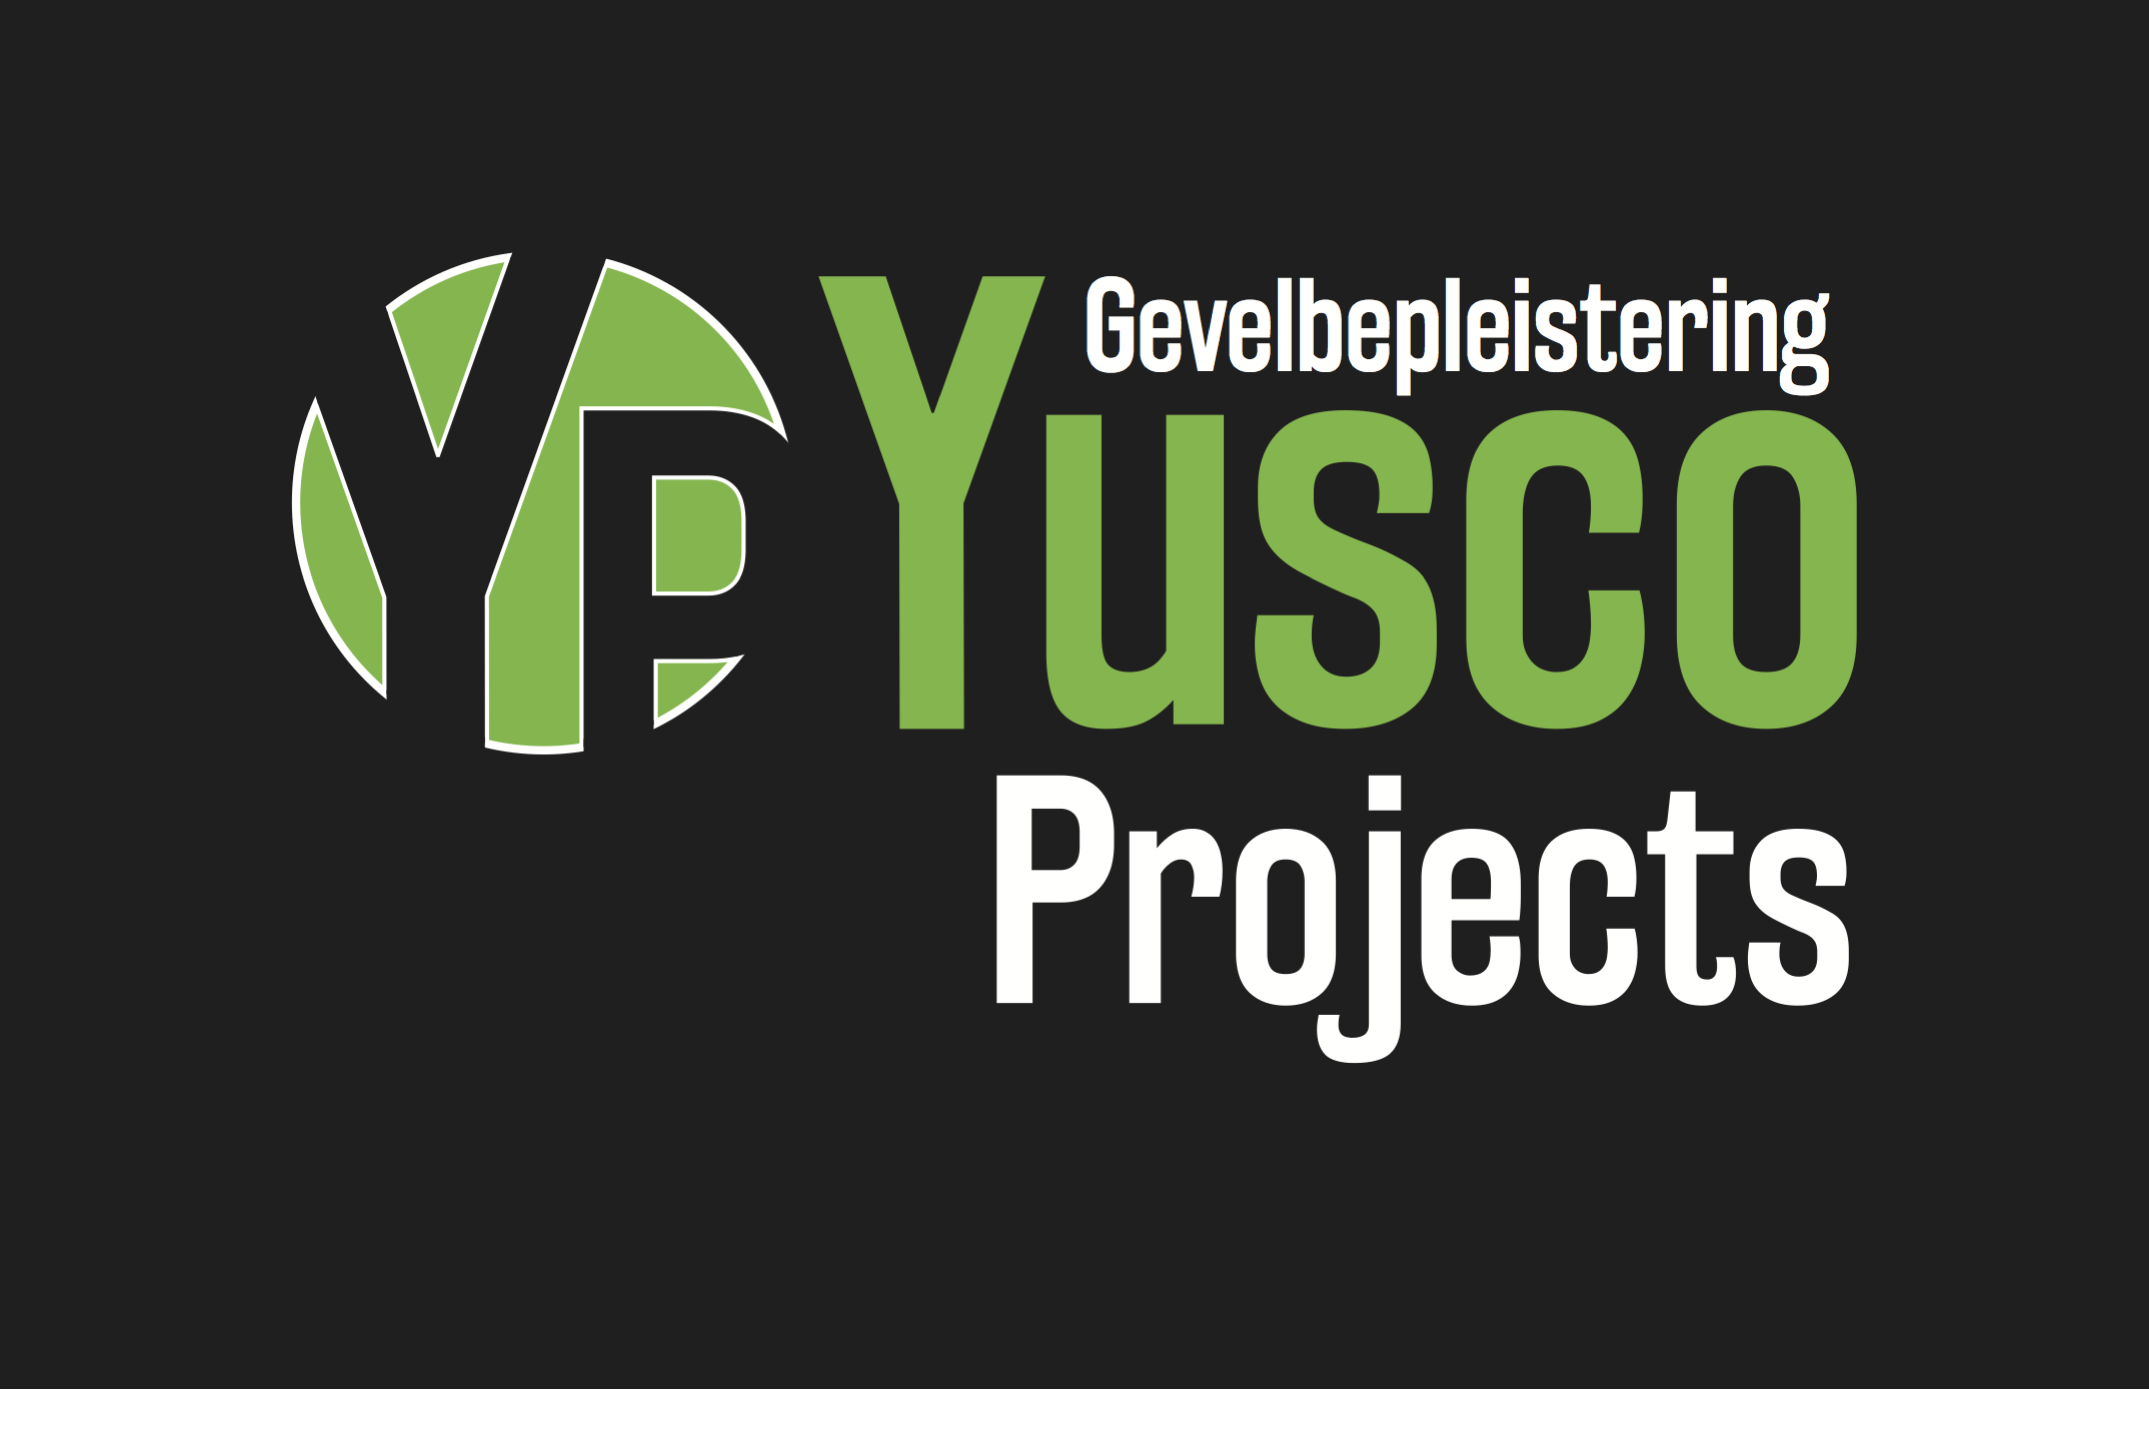 stukadoors Aalst Yusco Projects Gevelbepleistering